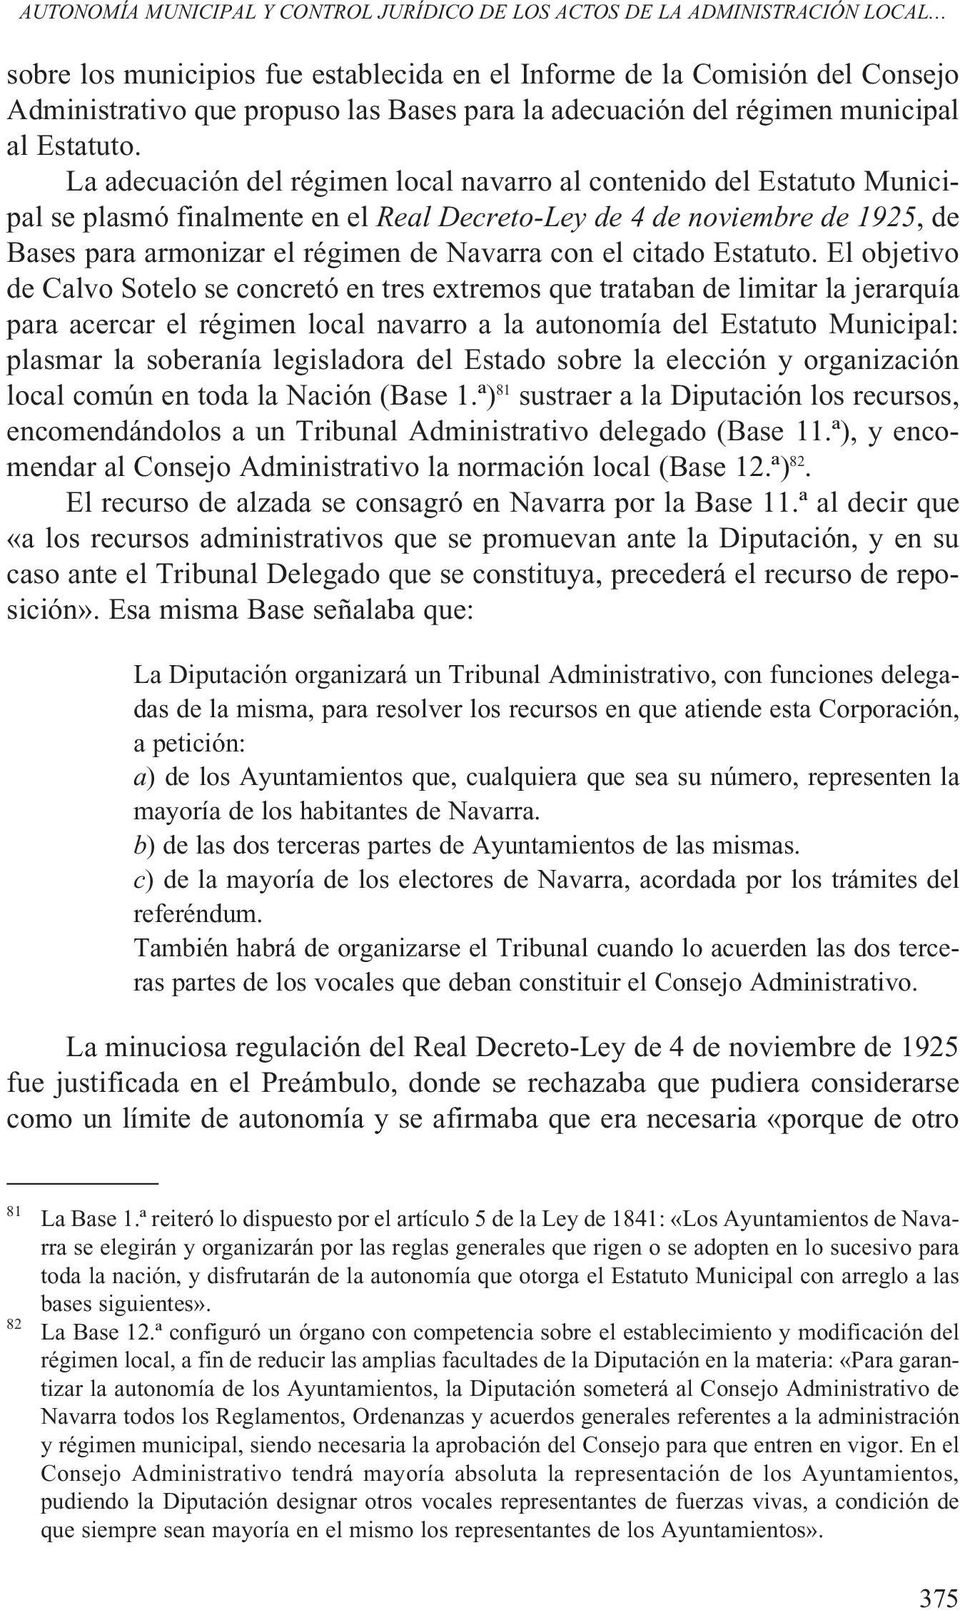 La adecuación del régimen local navarro al contenido del Estatuto Municipal se plasmó finalmente en el Real Decreto-Ley de 4 de noviembre de 1925, de Bases para armonizar el régimen de Navarra con el